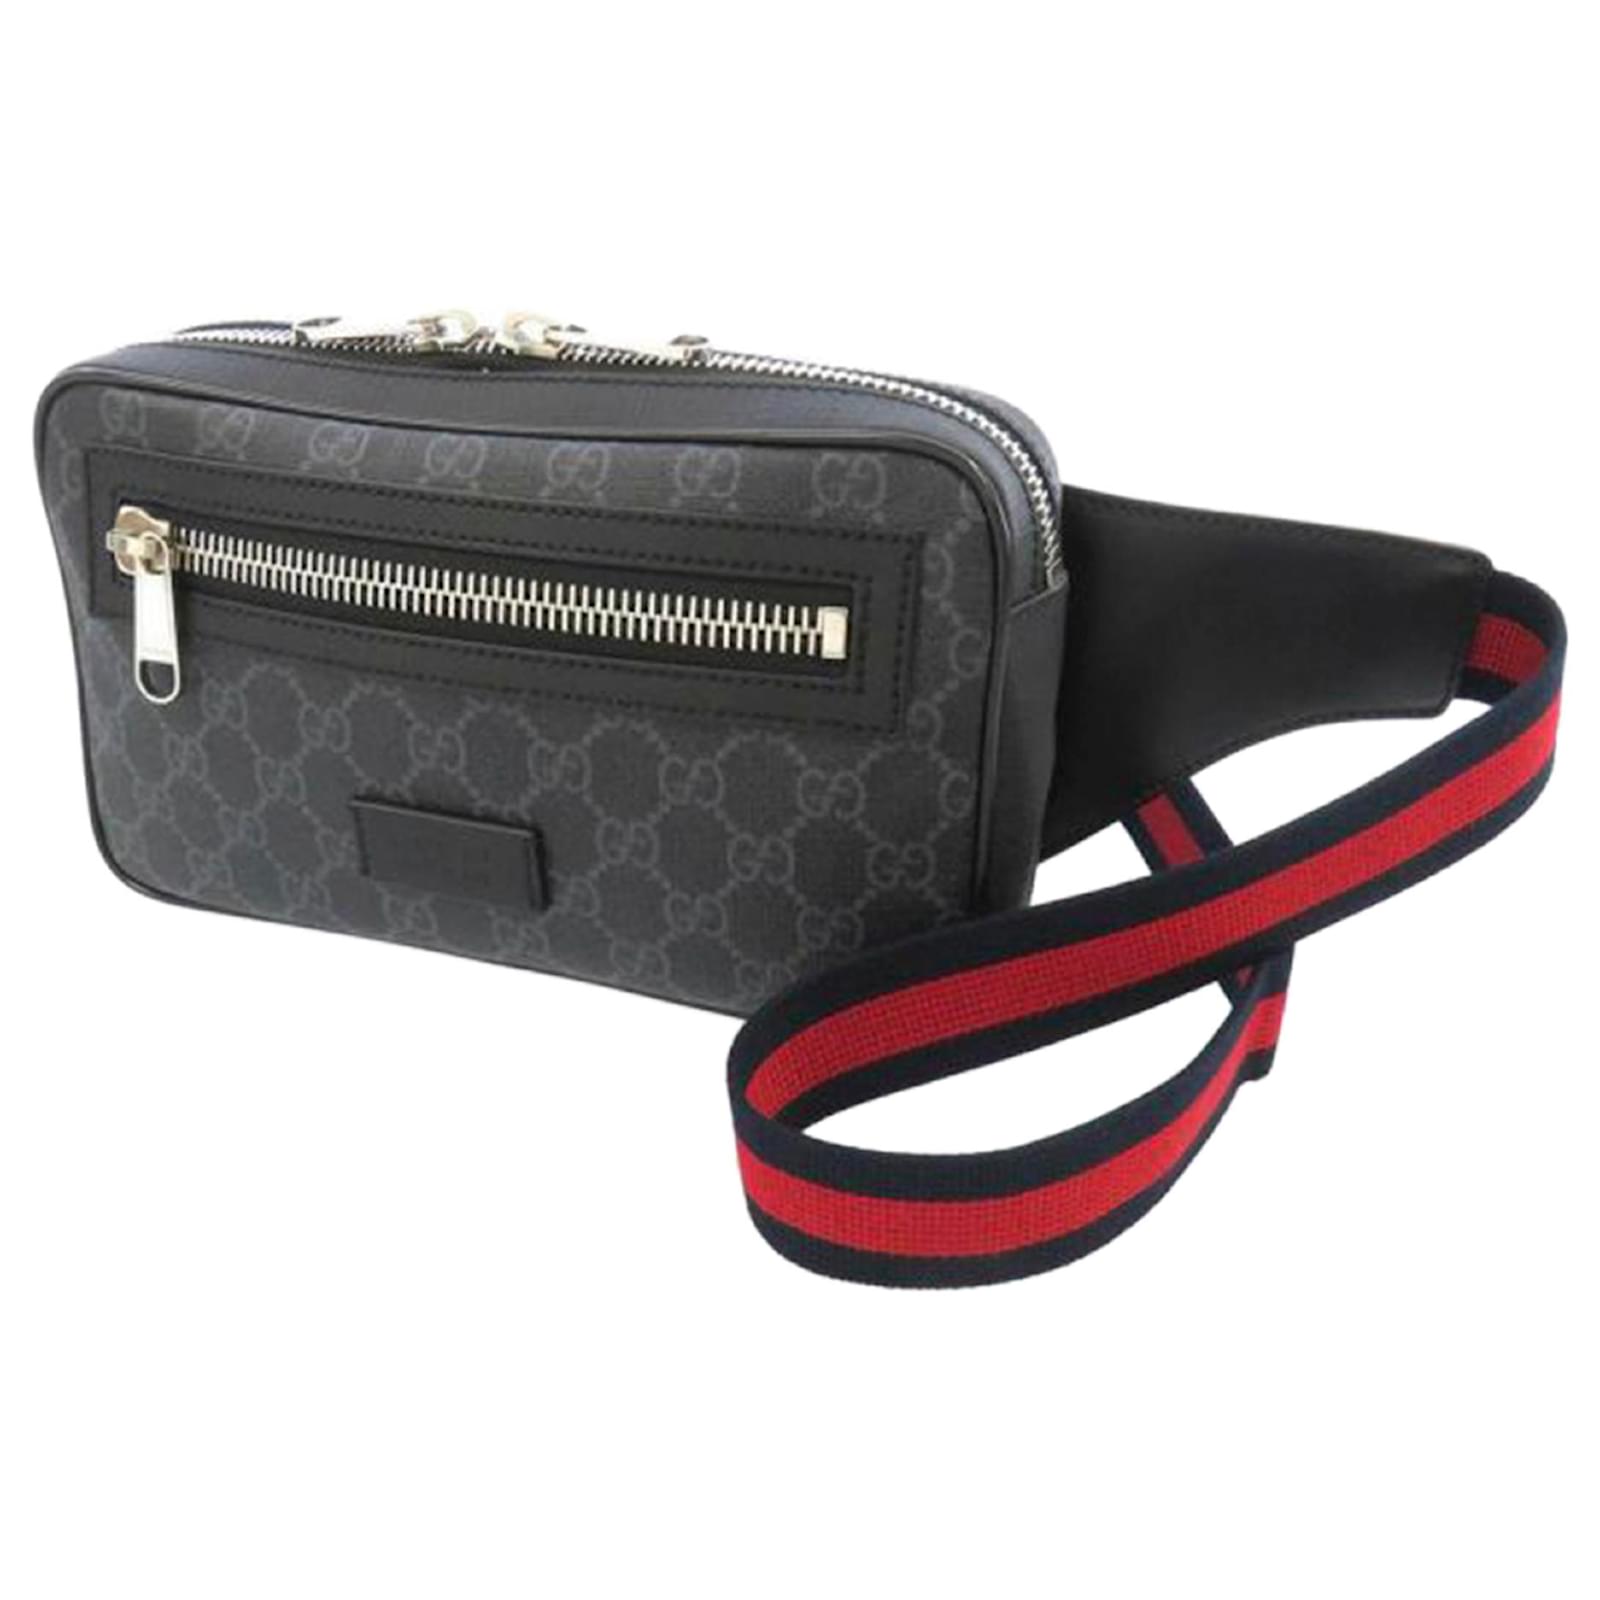 Supreme Shoulder Bag, Fanny Pack Black Real Leather Good